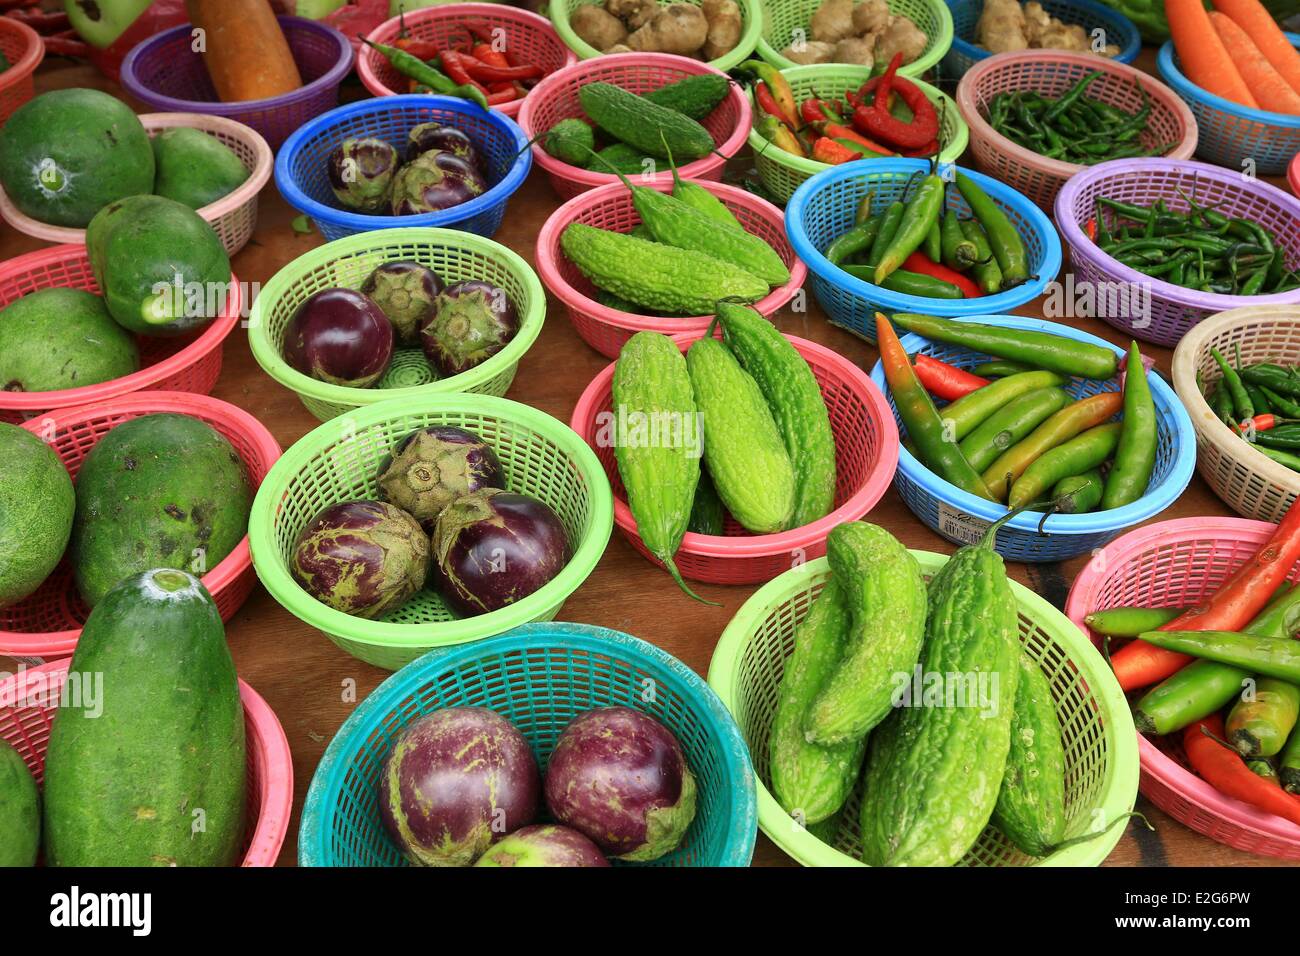 Malaysia Kuala Lumpur Pudu Market Stock Photo